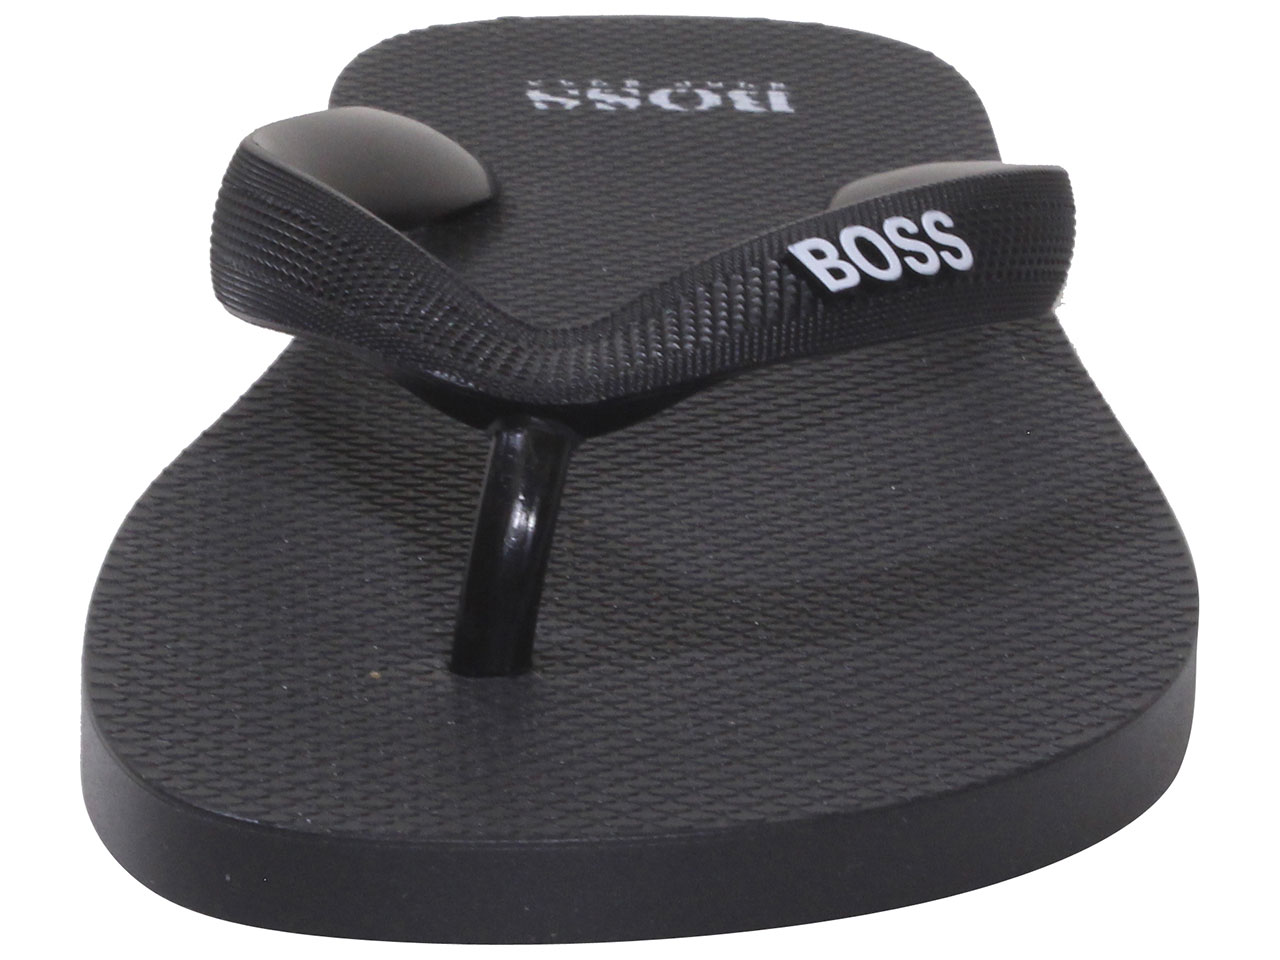 Hugo Boss Men's Pacific Flip-Flops Sandals Shoes Black Sz. 6/7 50428976 ...